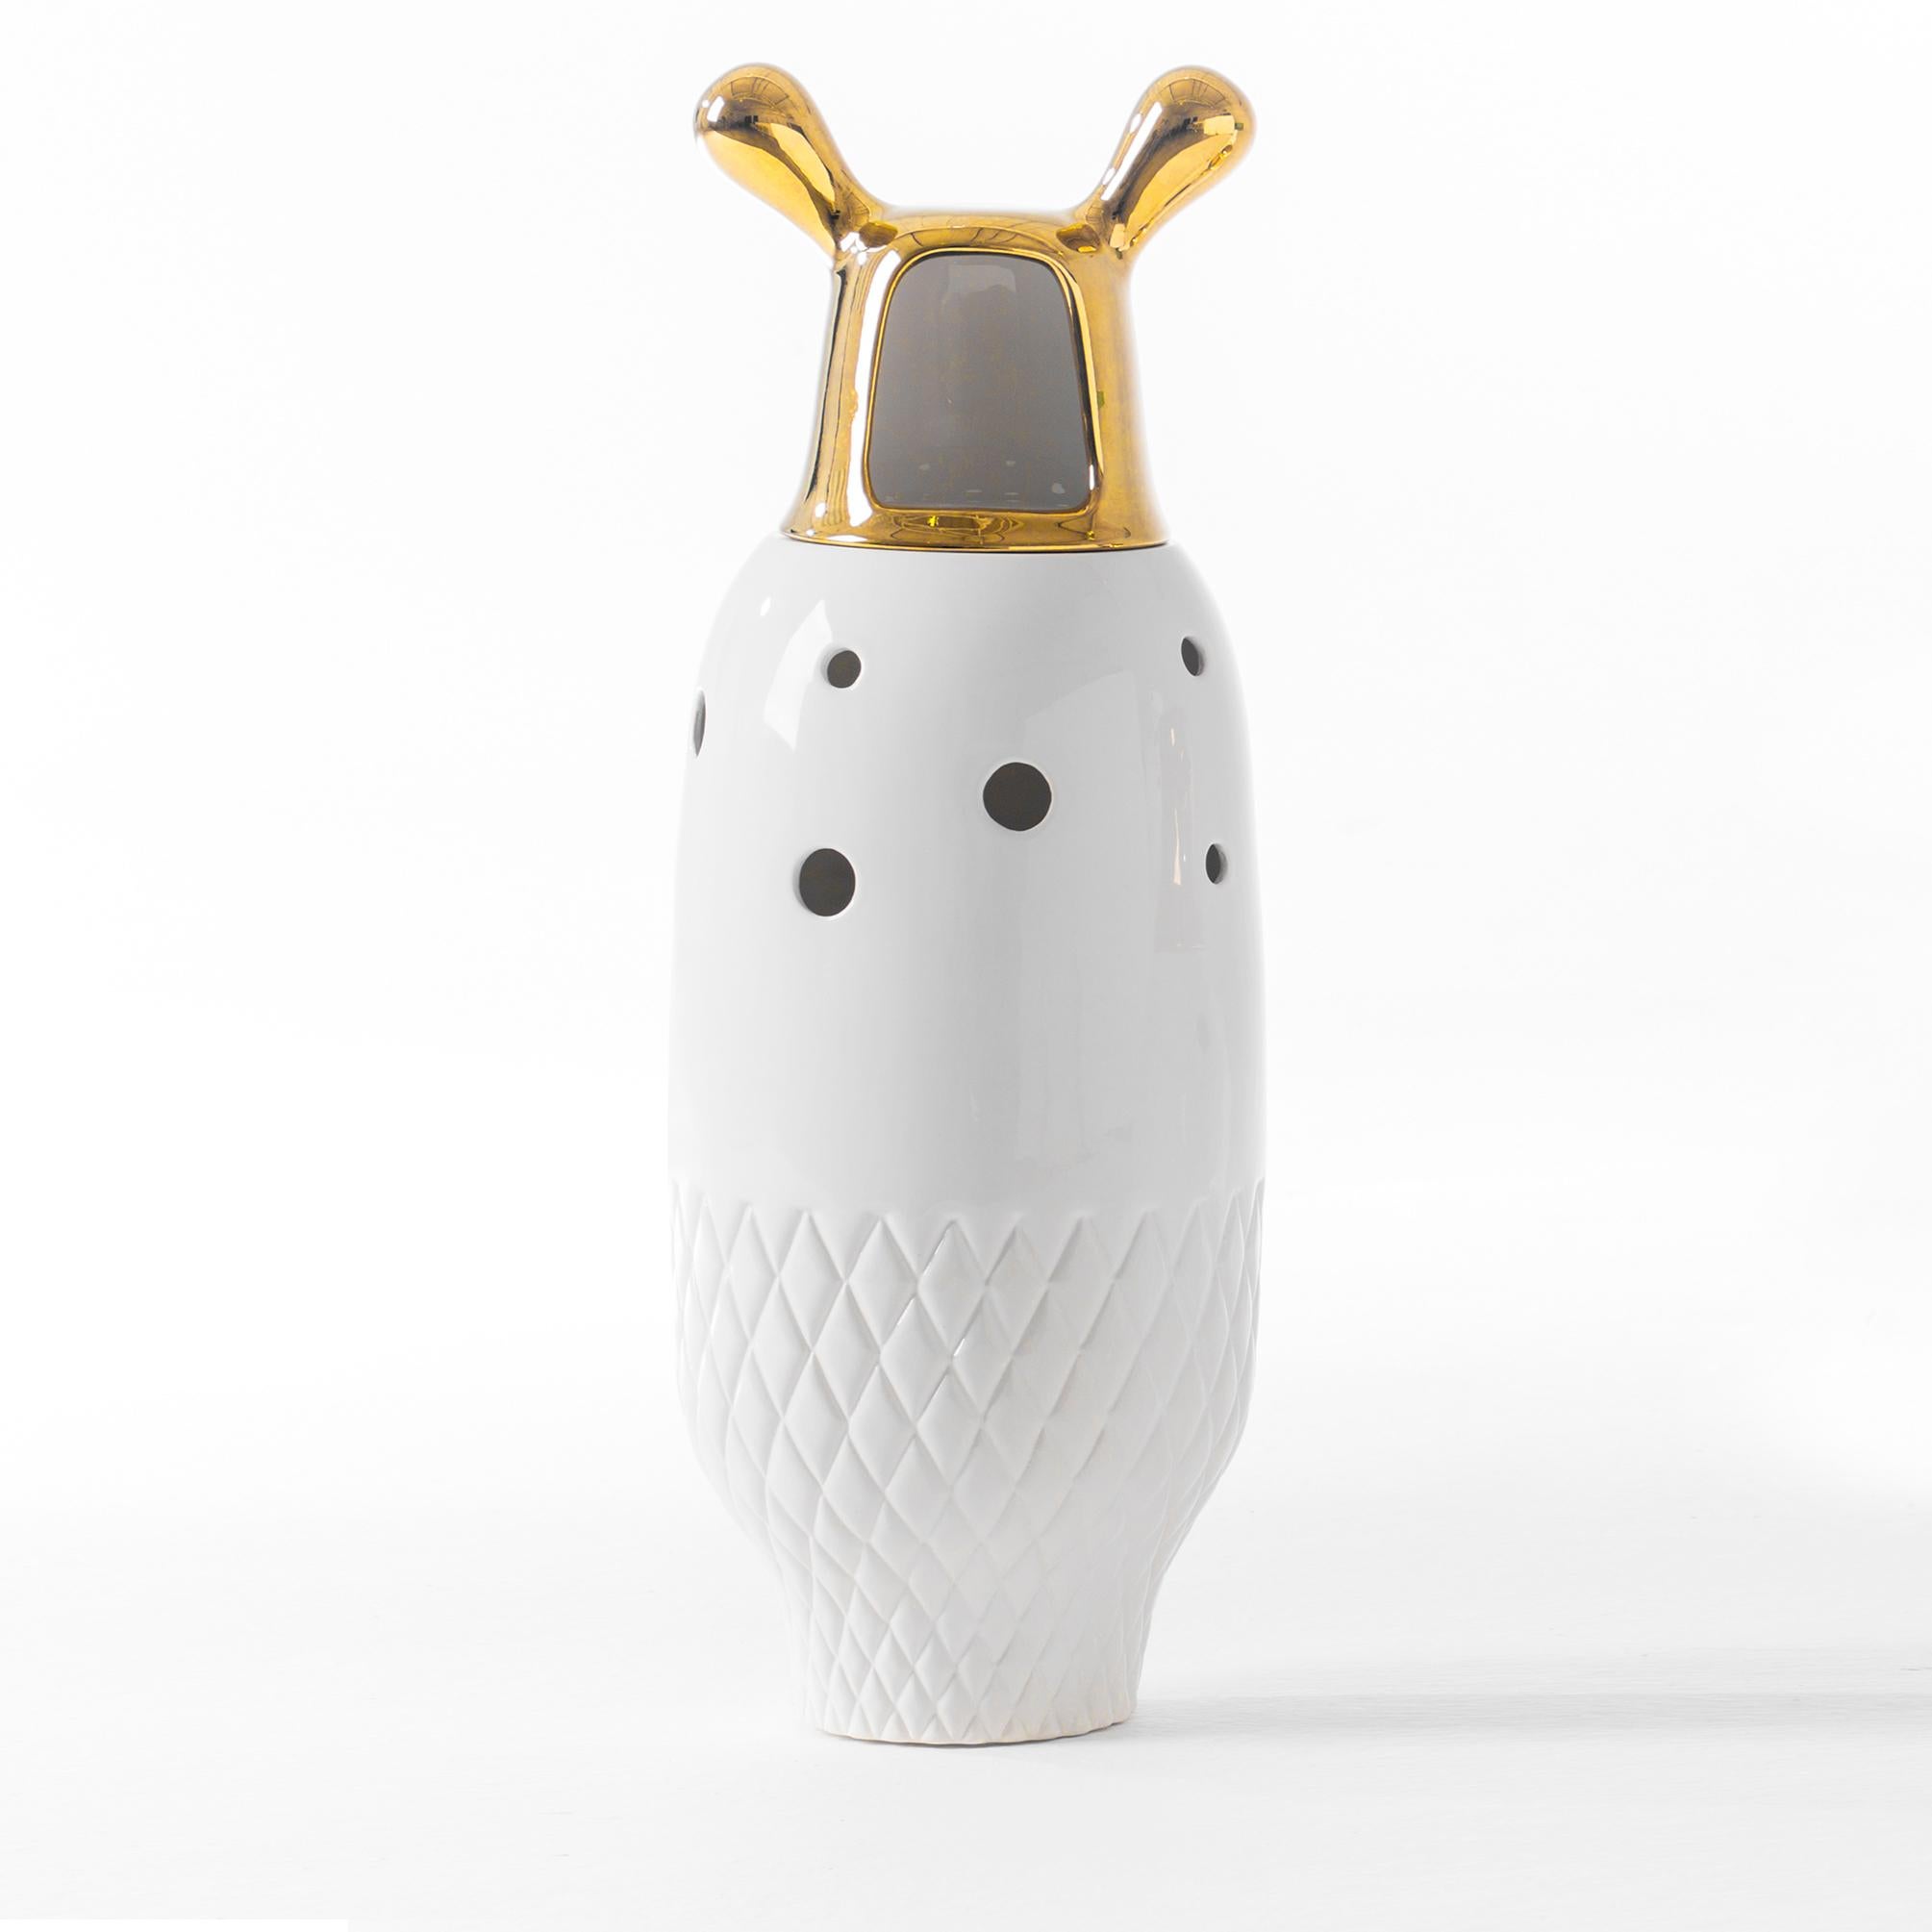 Spanish Jaime Hayon Contemporary Glazed Stoneware 'Showtime 10' White Gold Vase Number 5